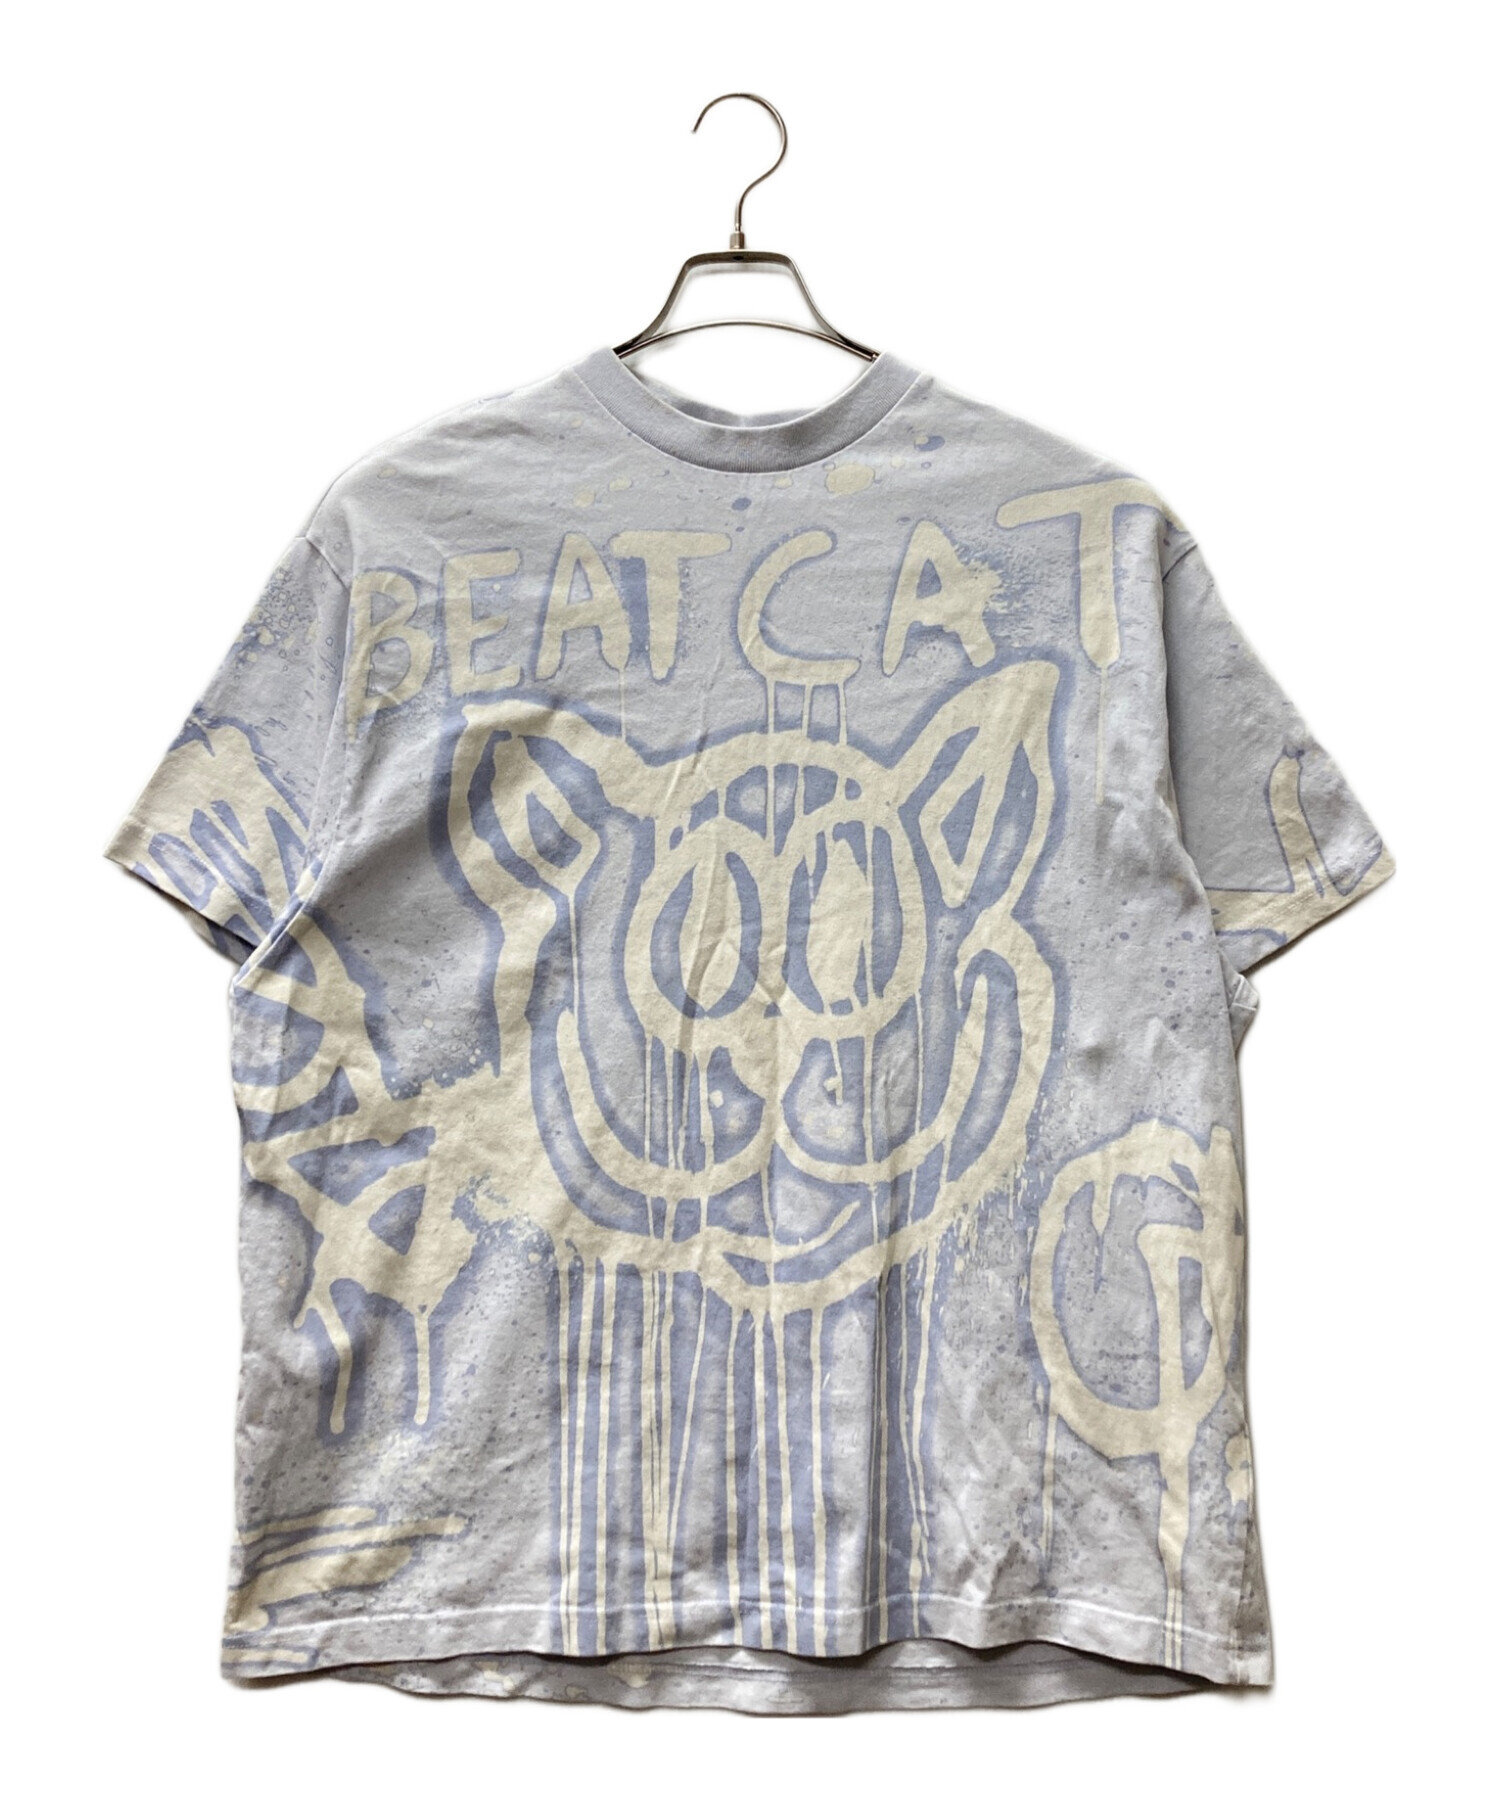 Acne studios (アクネ ストゥディオス) Beat Cat Bleached Print Logo T-shirt スカイブルー  サイズ:XS